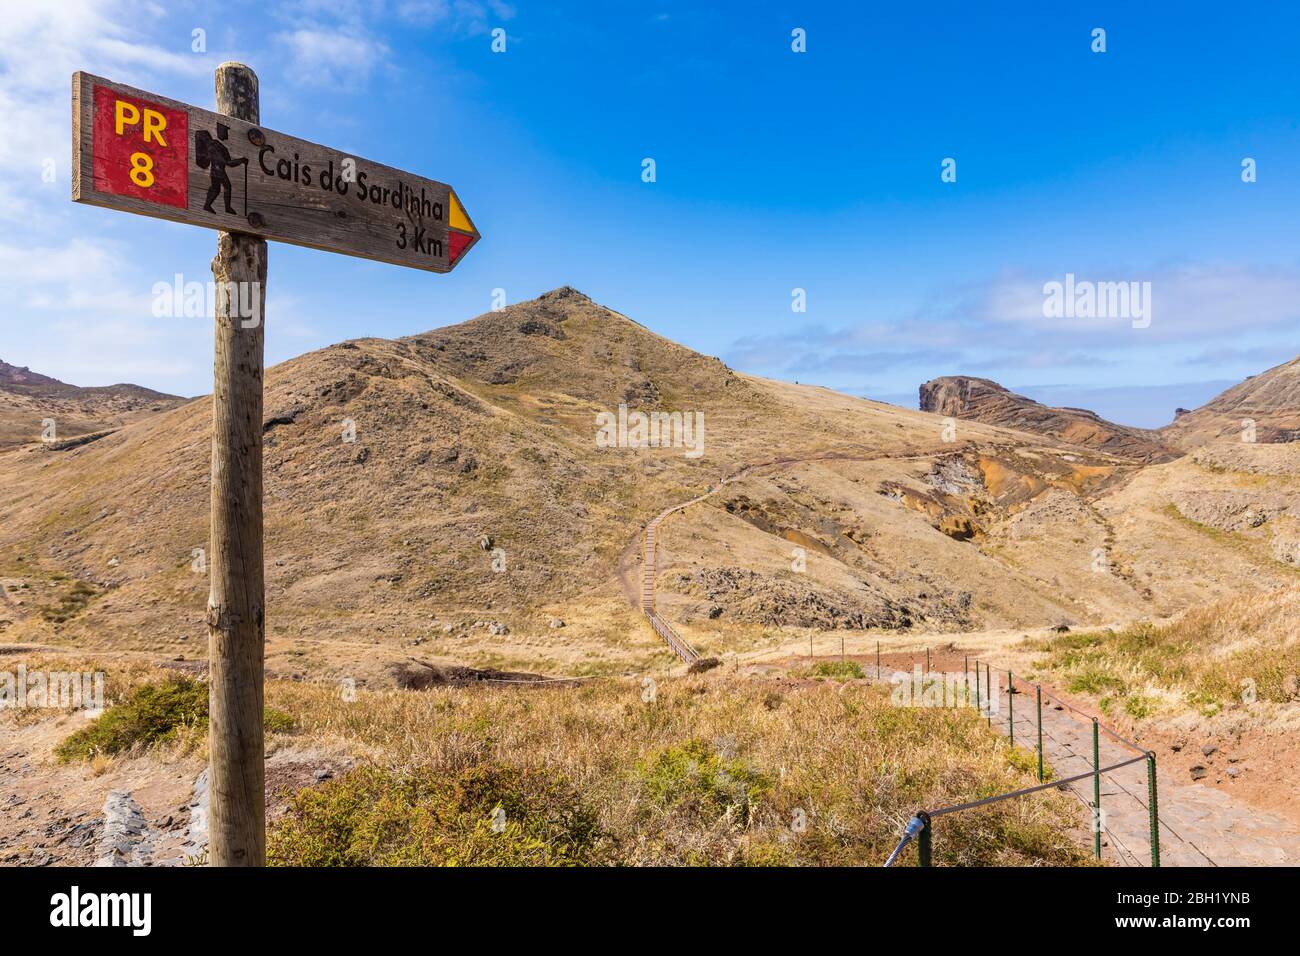 Portugal, Madeira, Directional sign at Ponta de Sao Lourenco Stock Photo